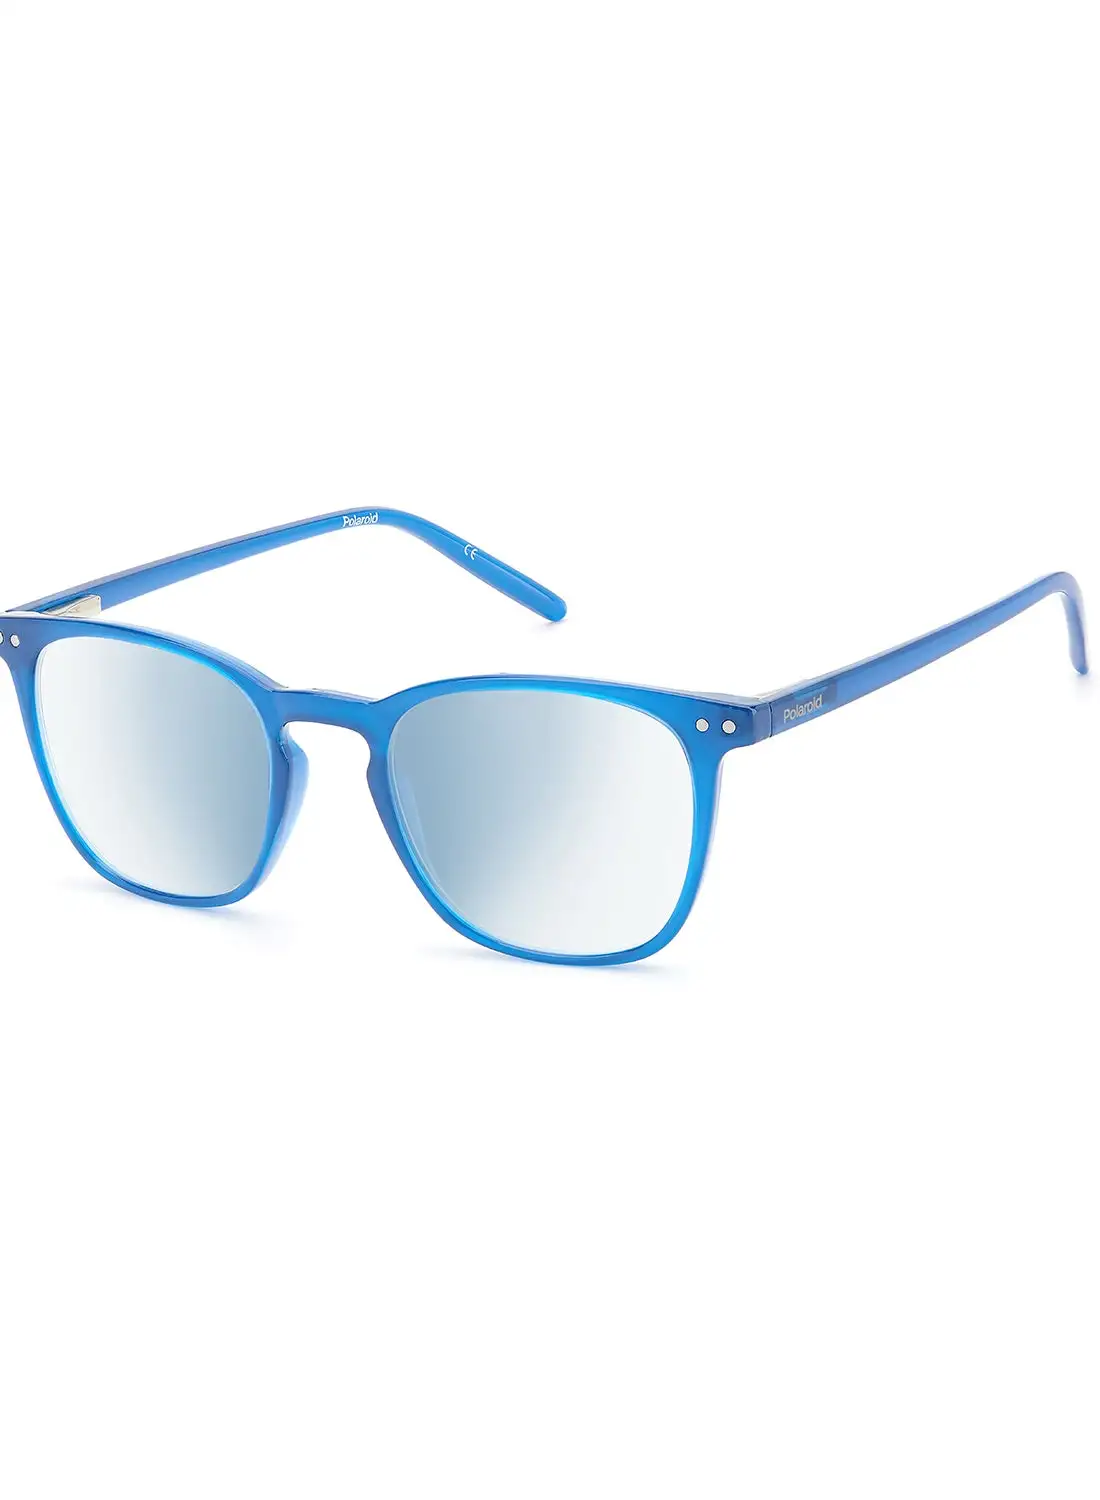 Polaroid Unisex Reading Glasses - Pld 0029/R/Bb Blue Azur50 - Lens Size: 50 Mm